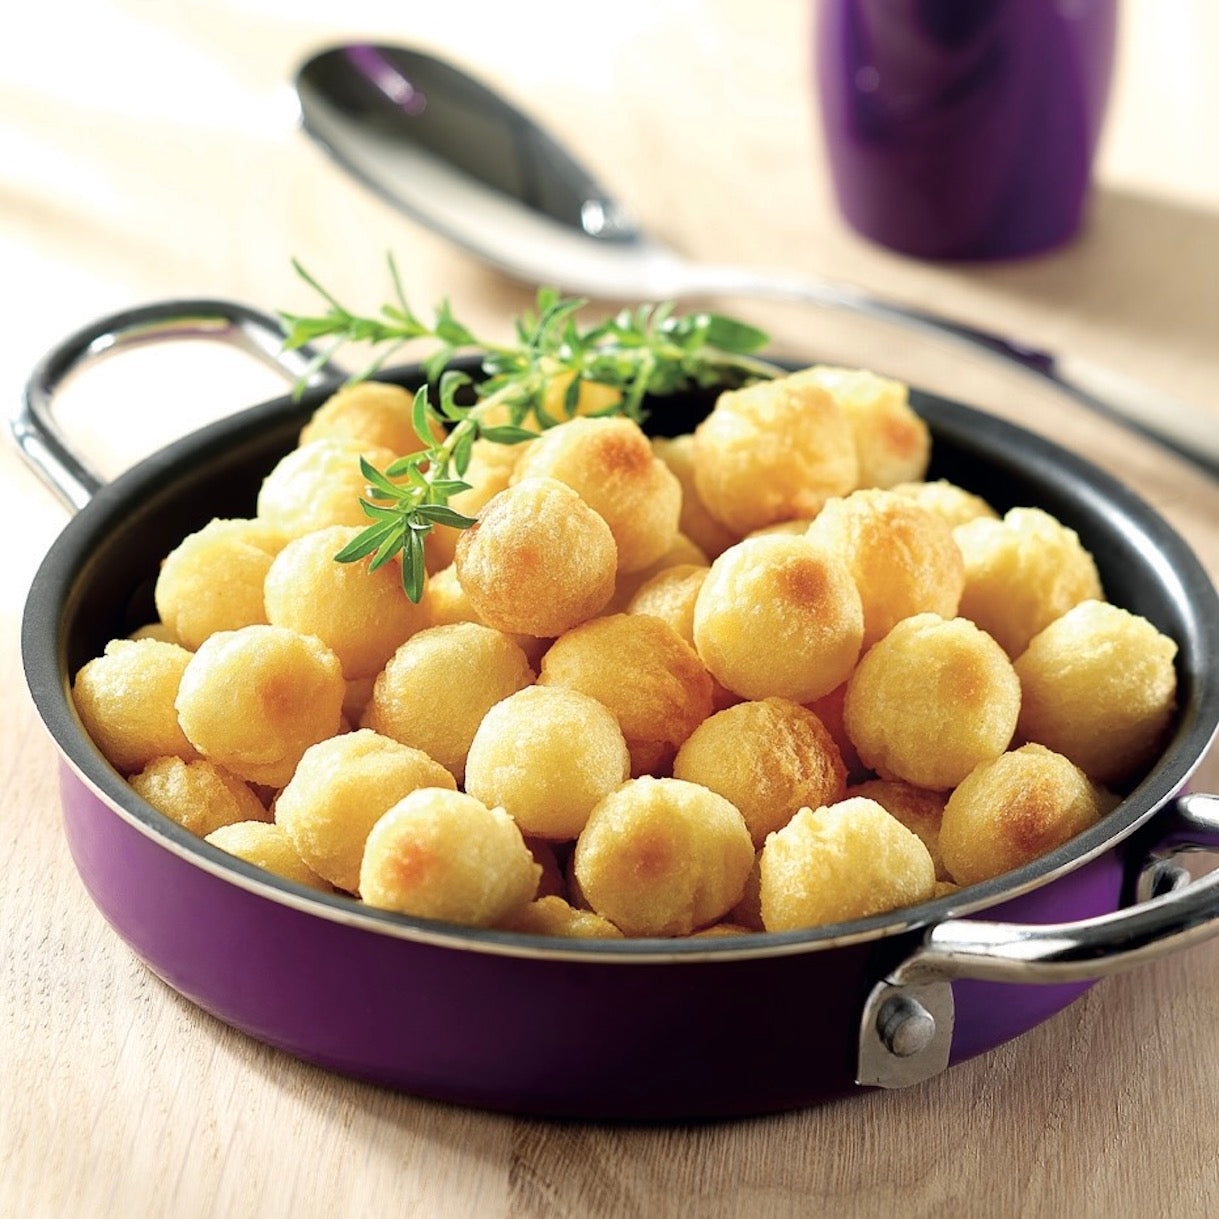 Potato Pomme Noisettes | Frozen | BOREAL | 2.5kg